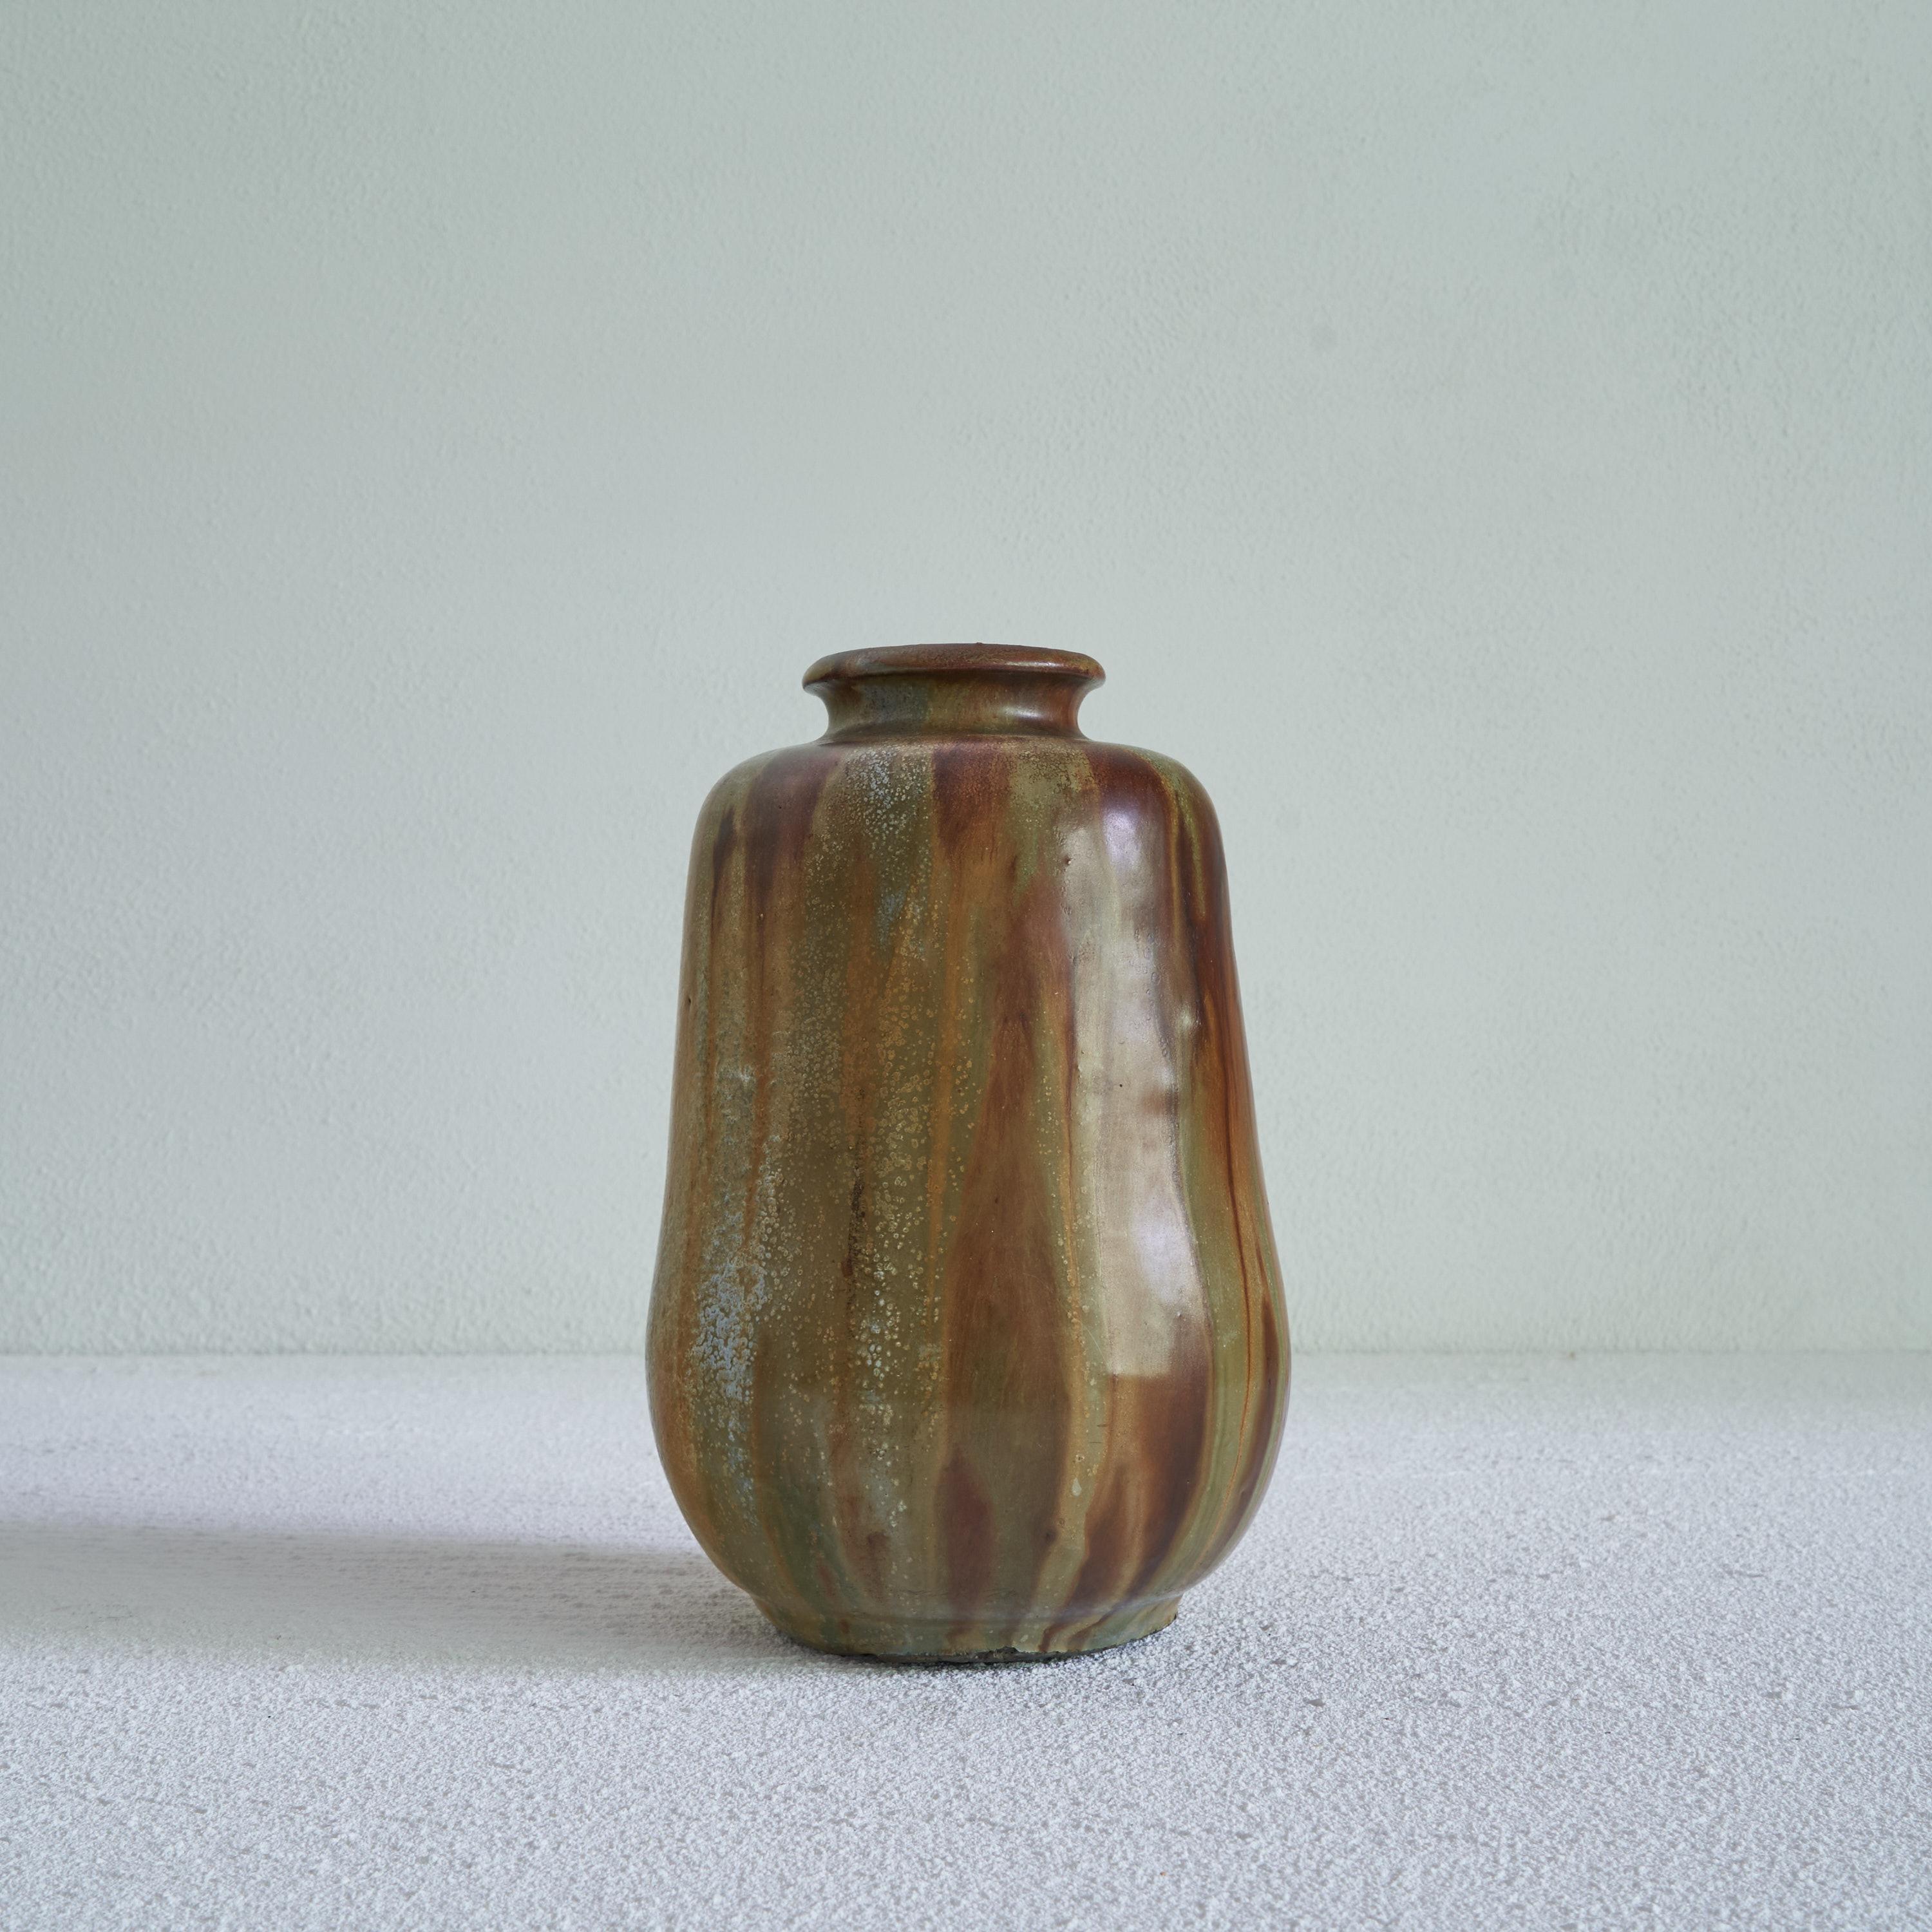 Vase en poterie Studio 'Grès Salé Grand Feu' de Willy Biron Châtelet. Belgique, milieu du XXe siècle.

Magnifique vase en poterie d'atelier 'Grès Salé Grand Feu' de Willy Biron provenant de Châtelet près de Charleroi en Belgique. Dans cette